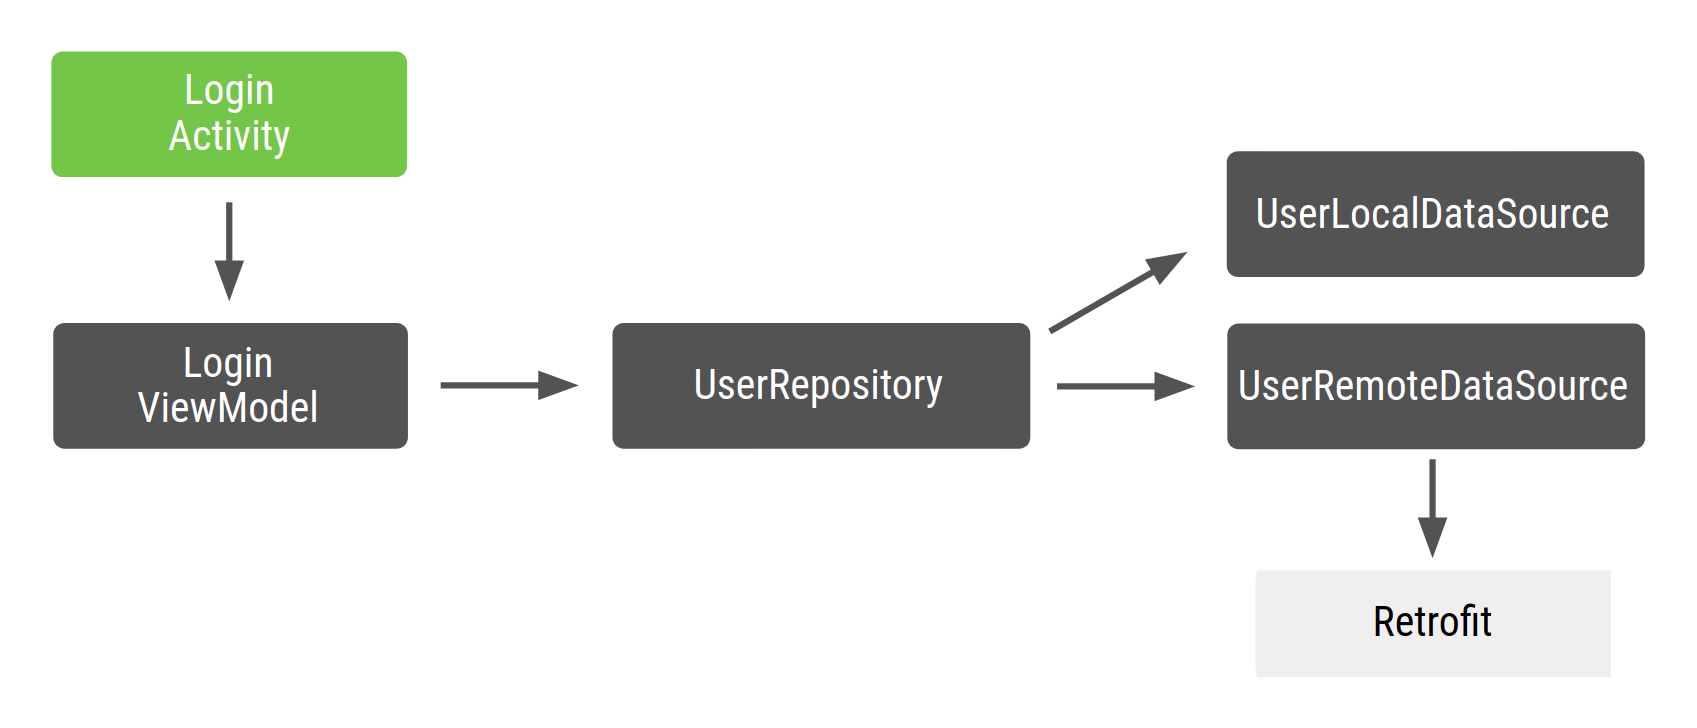 LoginActivity dépend de LoginViewModel, qui dépend de UserRepository, qui dépend de UserLocalDataSource et de UserRemoteDataSource, qui à son tour dépend de Retrofit.